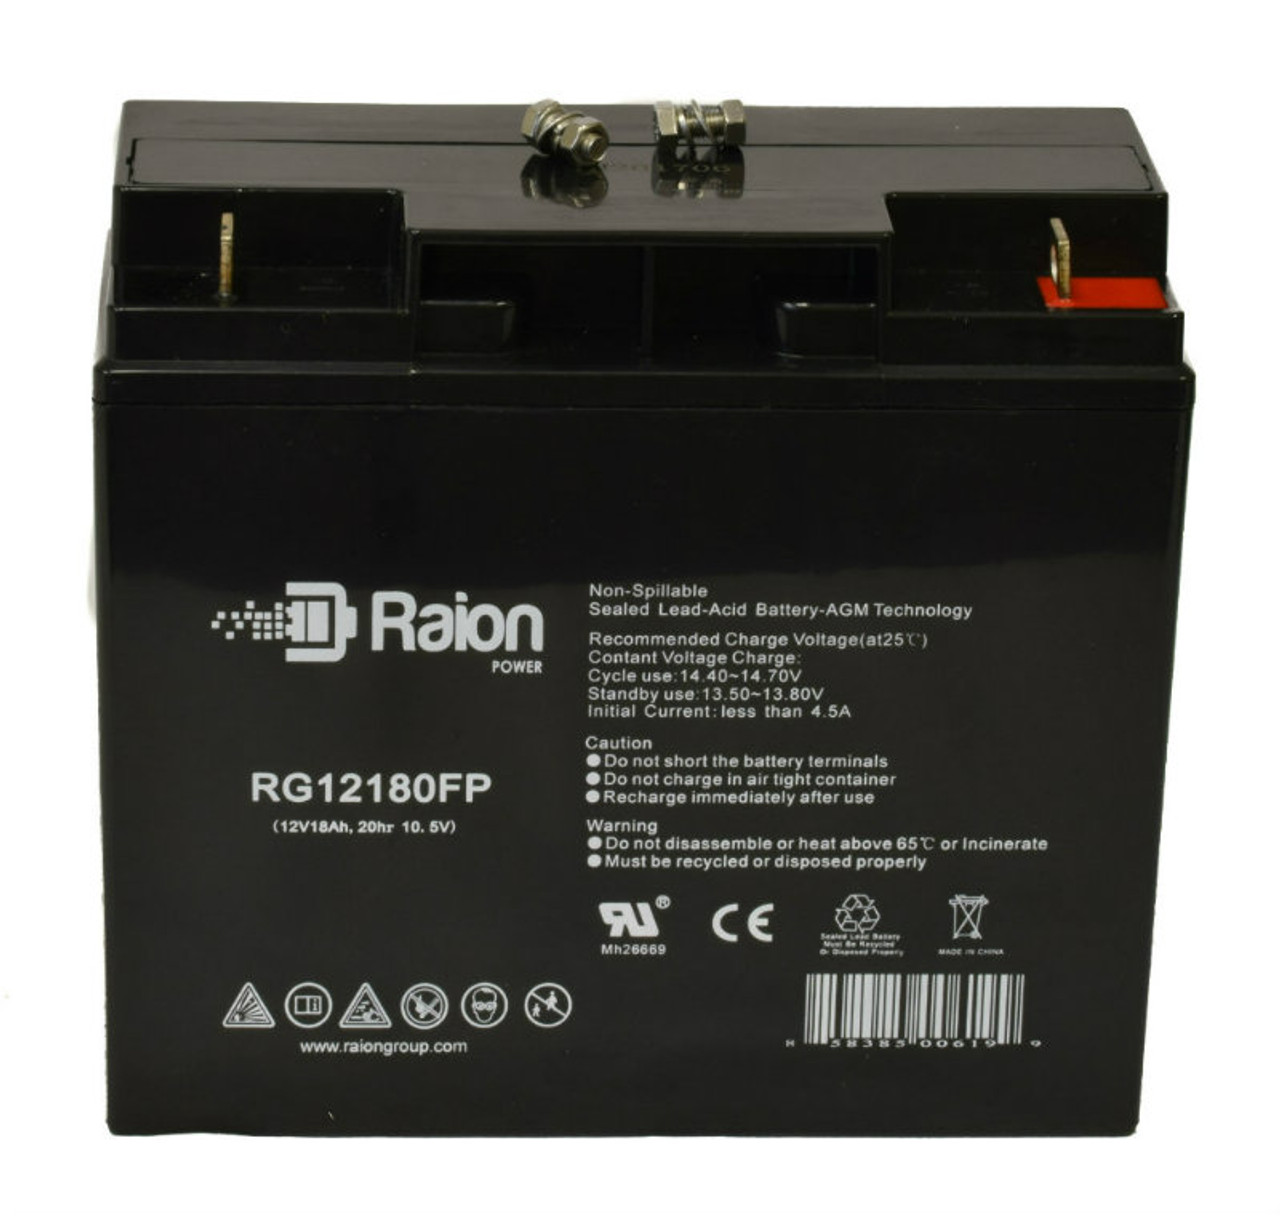 Raion Power RG12180FP 12V 18Ah Lead Acid Battery for Enersys NPX-80